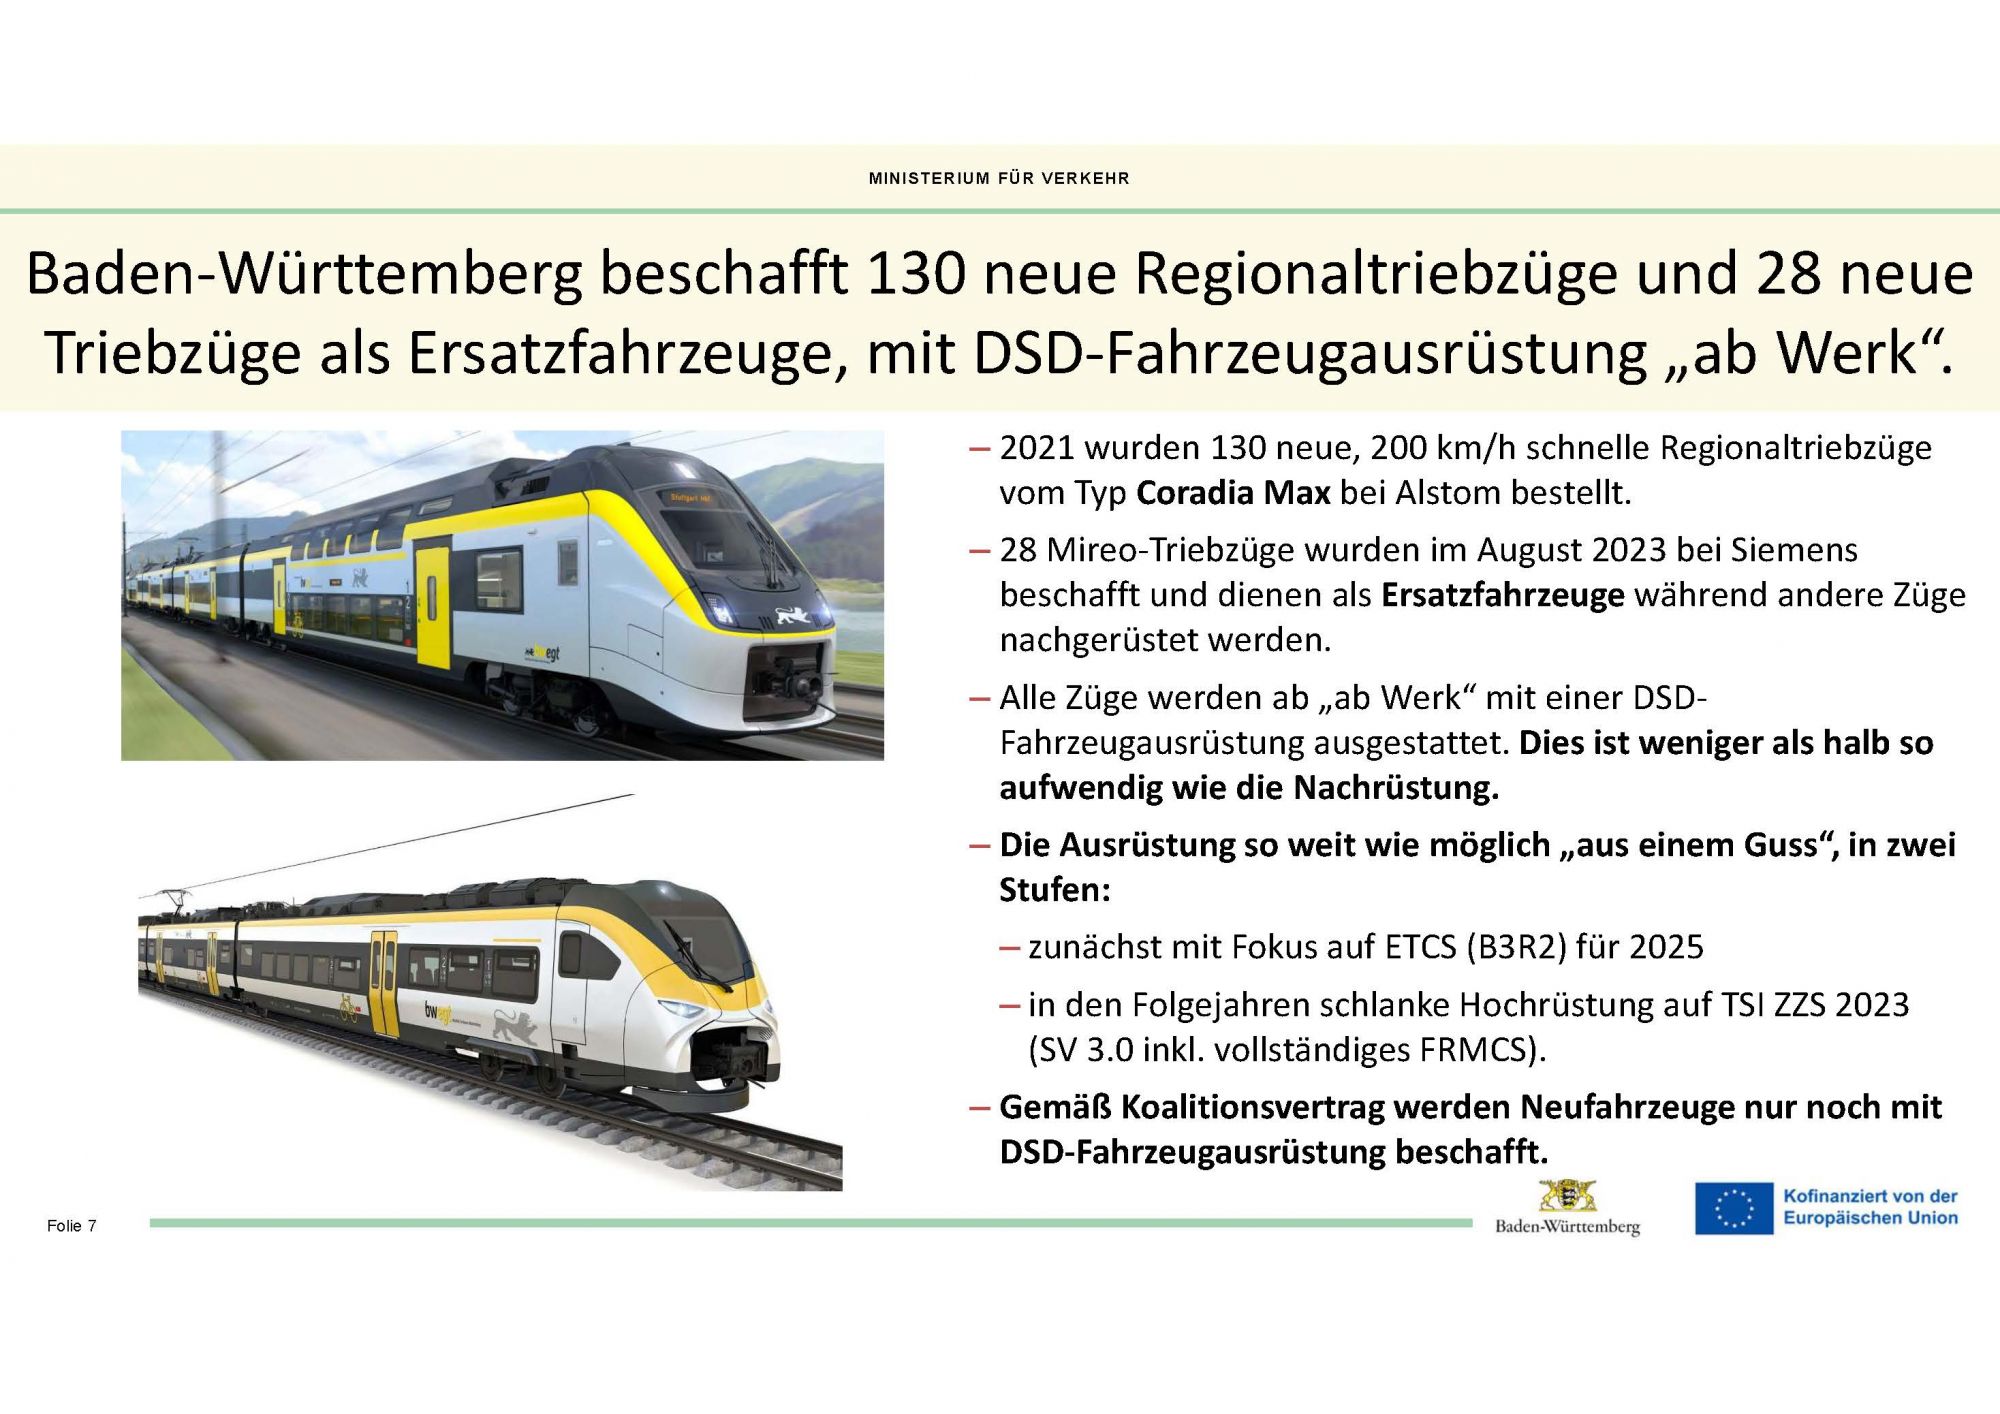 Quelle: Thomas Vogel/ Ministerium für Verkehr Baden-Württemberg